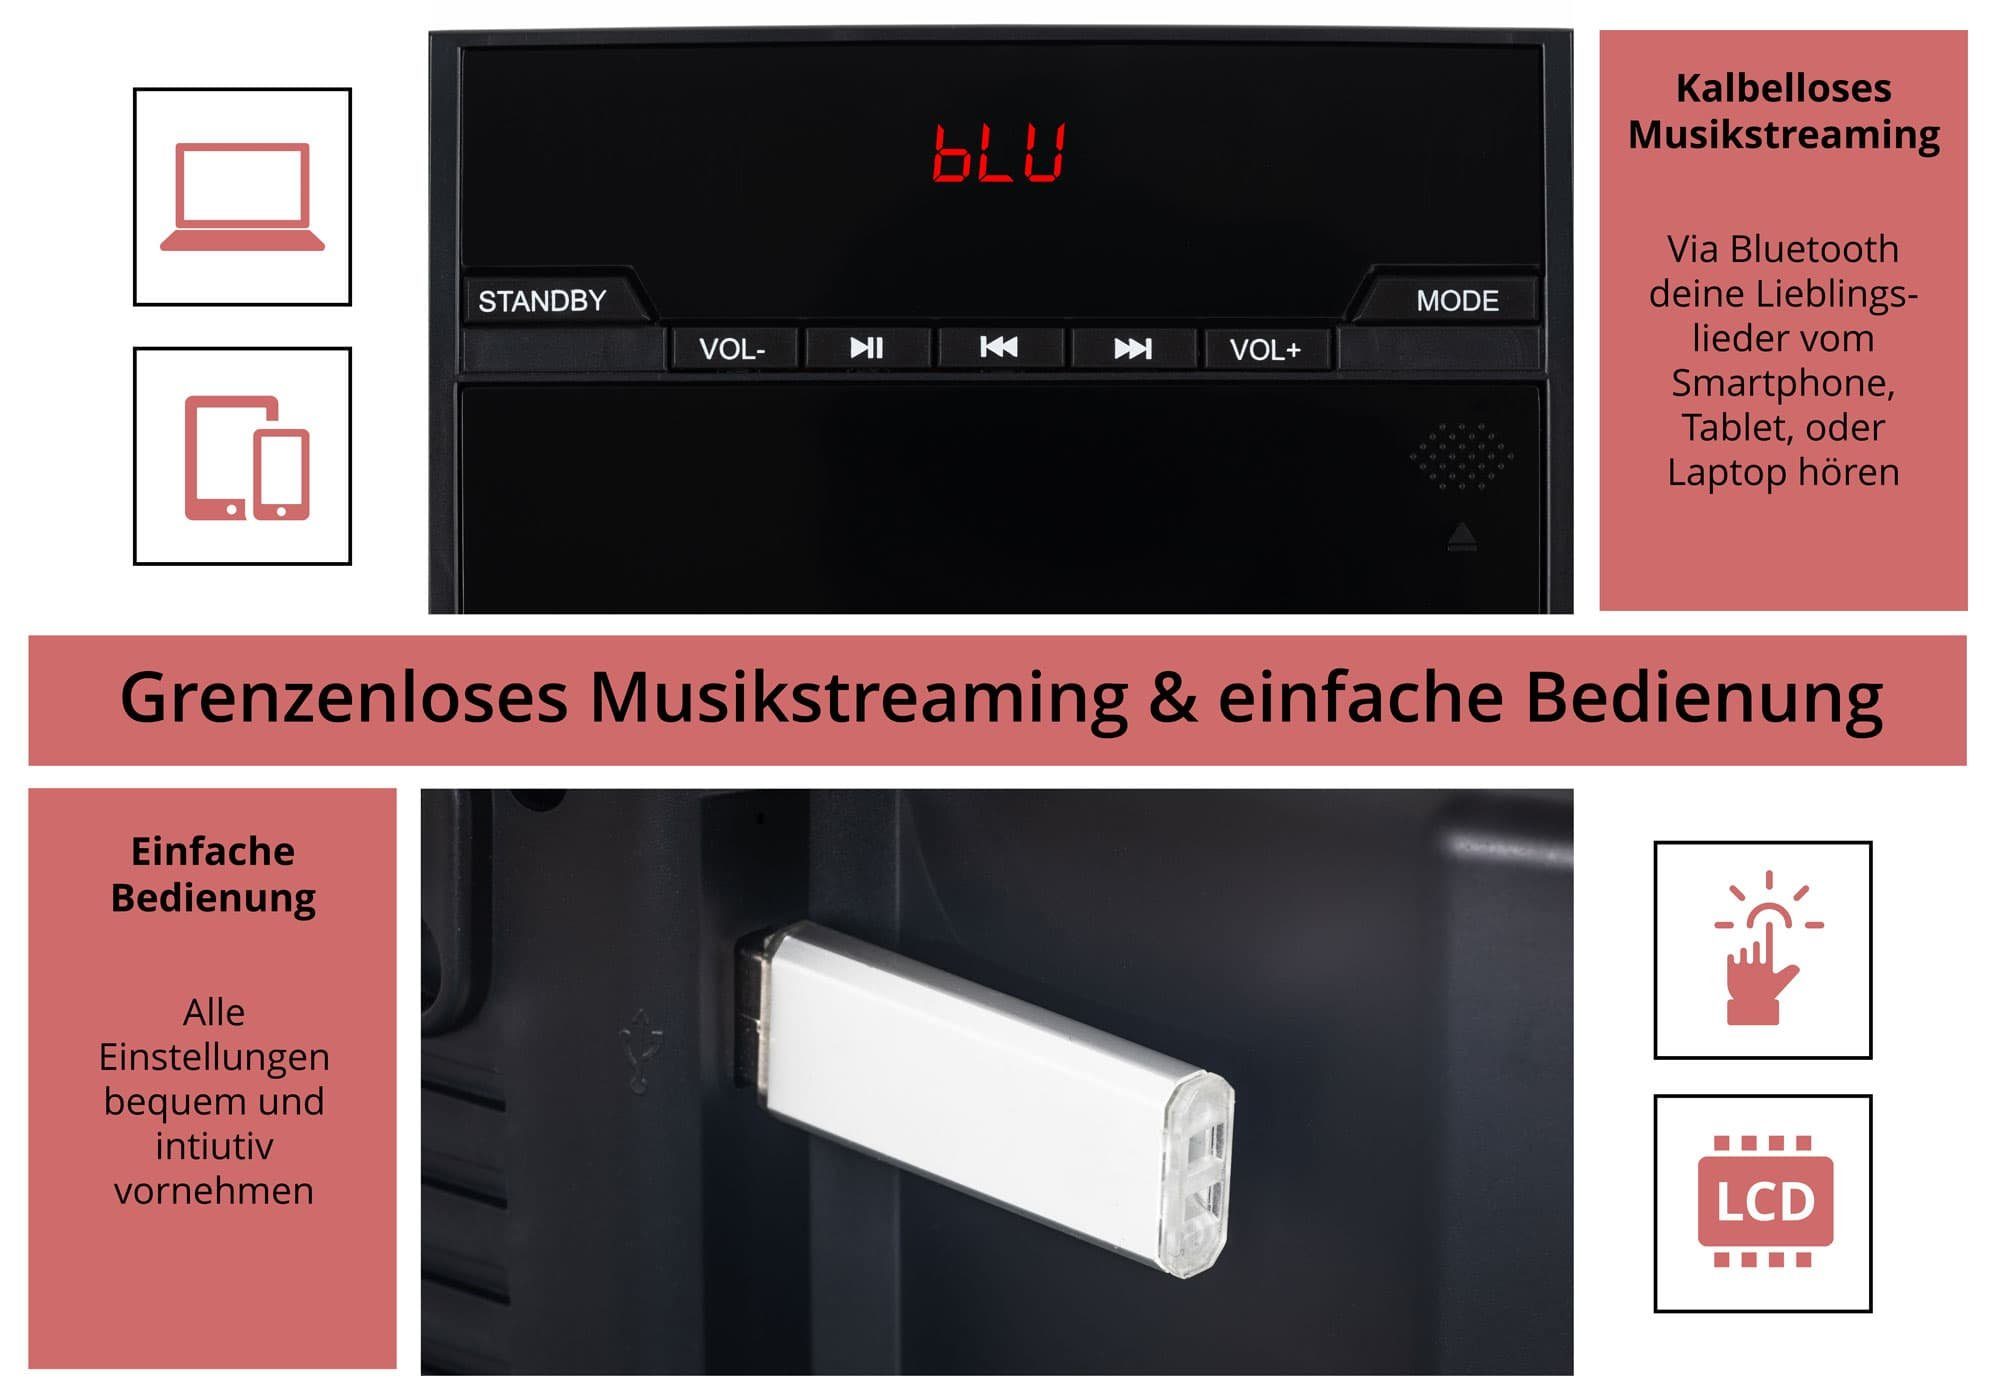 CD/MP3-Player, (UKW/MW-Radio, W, und Beatfoxx Microanlage Stereoanlage MCD-60 mit Bluetooth) 6,00 Vertikal USB-Slot